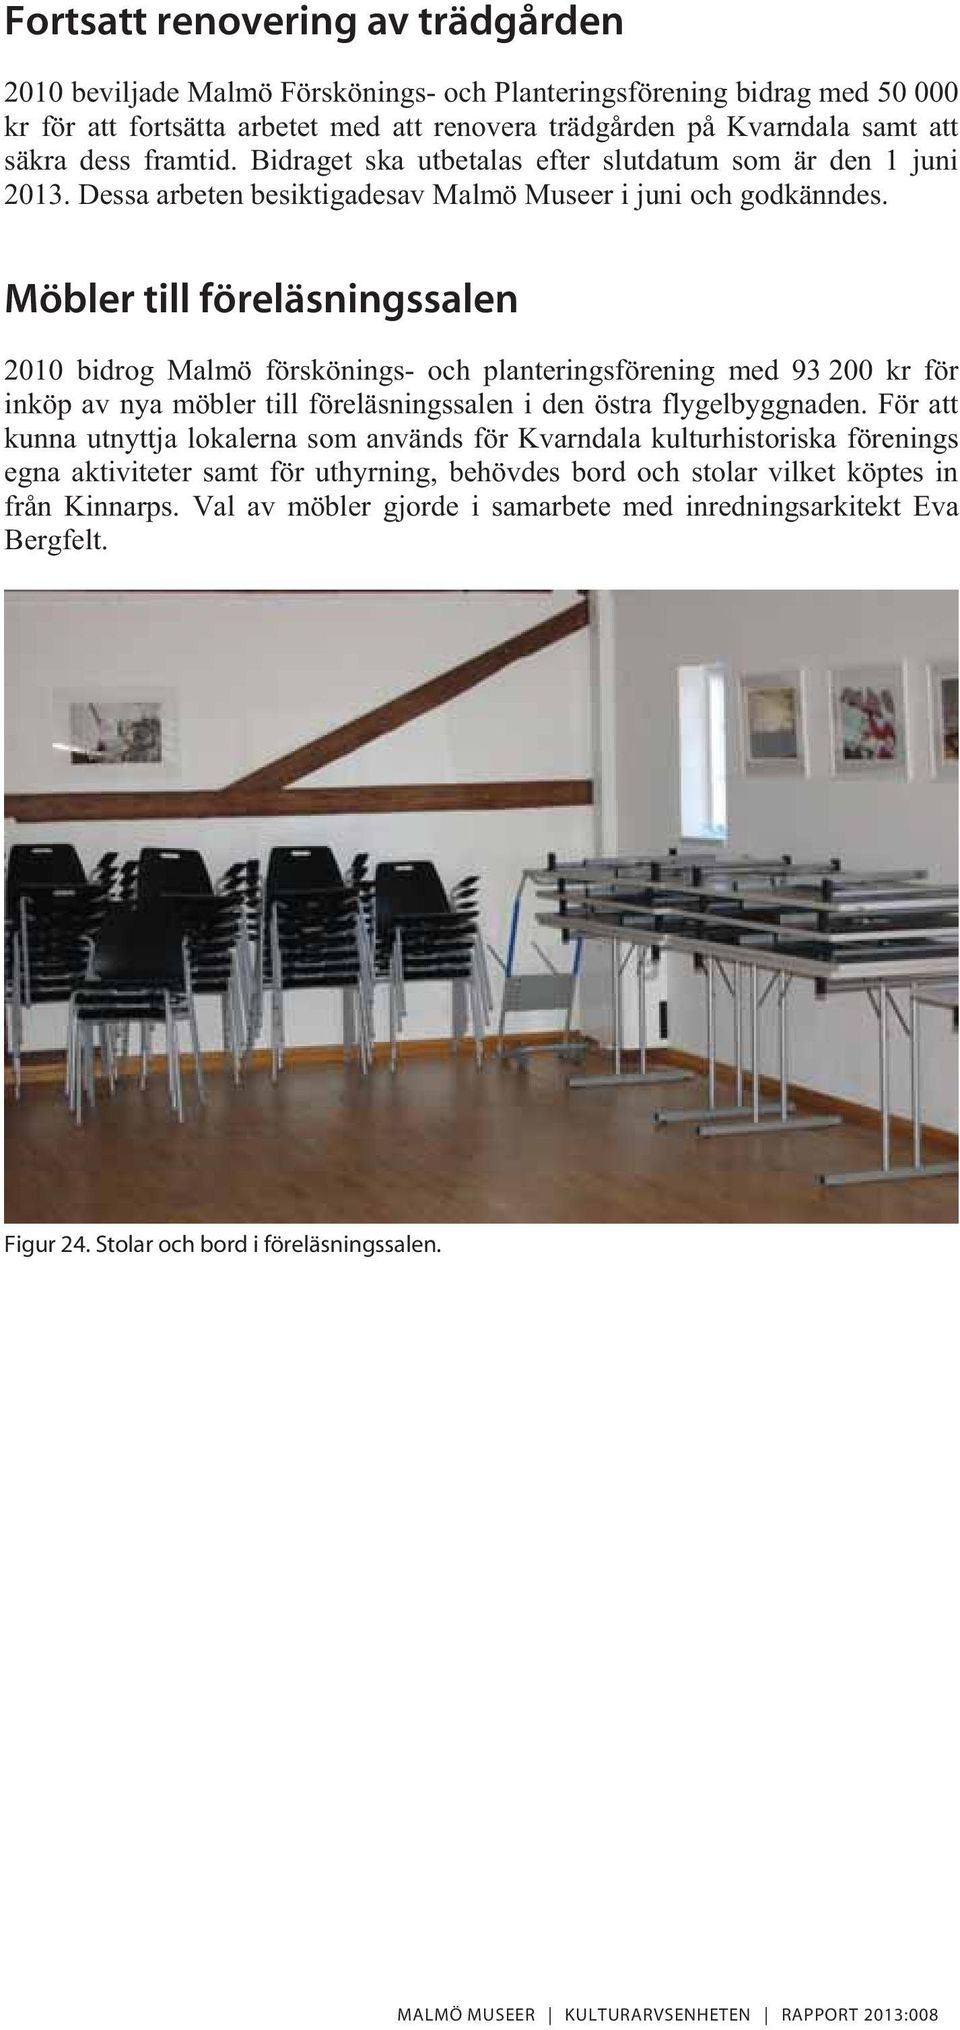 Möbler till föreläsningssalen 2010 bidrog Malmö förskönings- och planteringsförening med 93 200 kr för inköp av nya möbler till föreläsningssalen i den östra flygelbyggnaden.